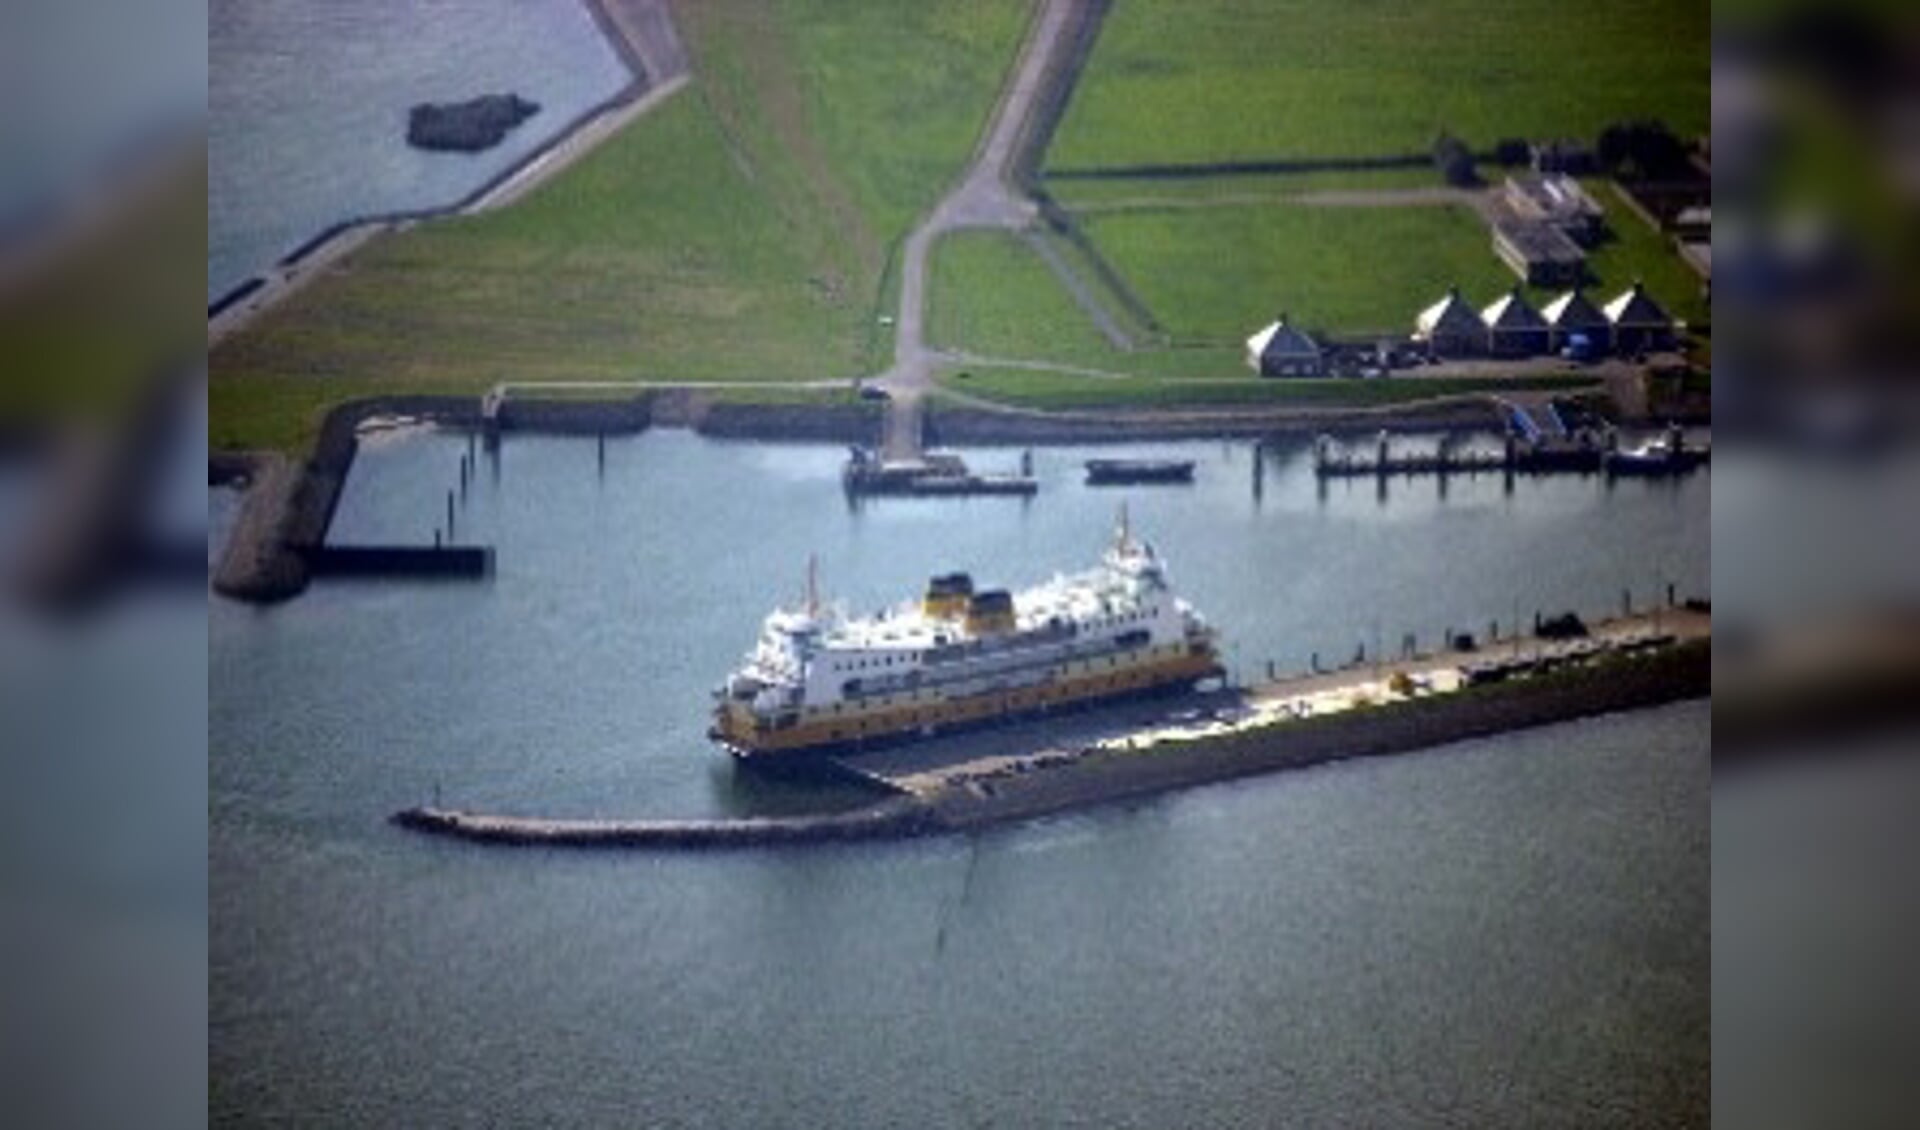 Een luchtfoto van veerboot Molengat die hier aan de kade ligt in de haven van het NIOZ.